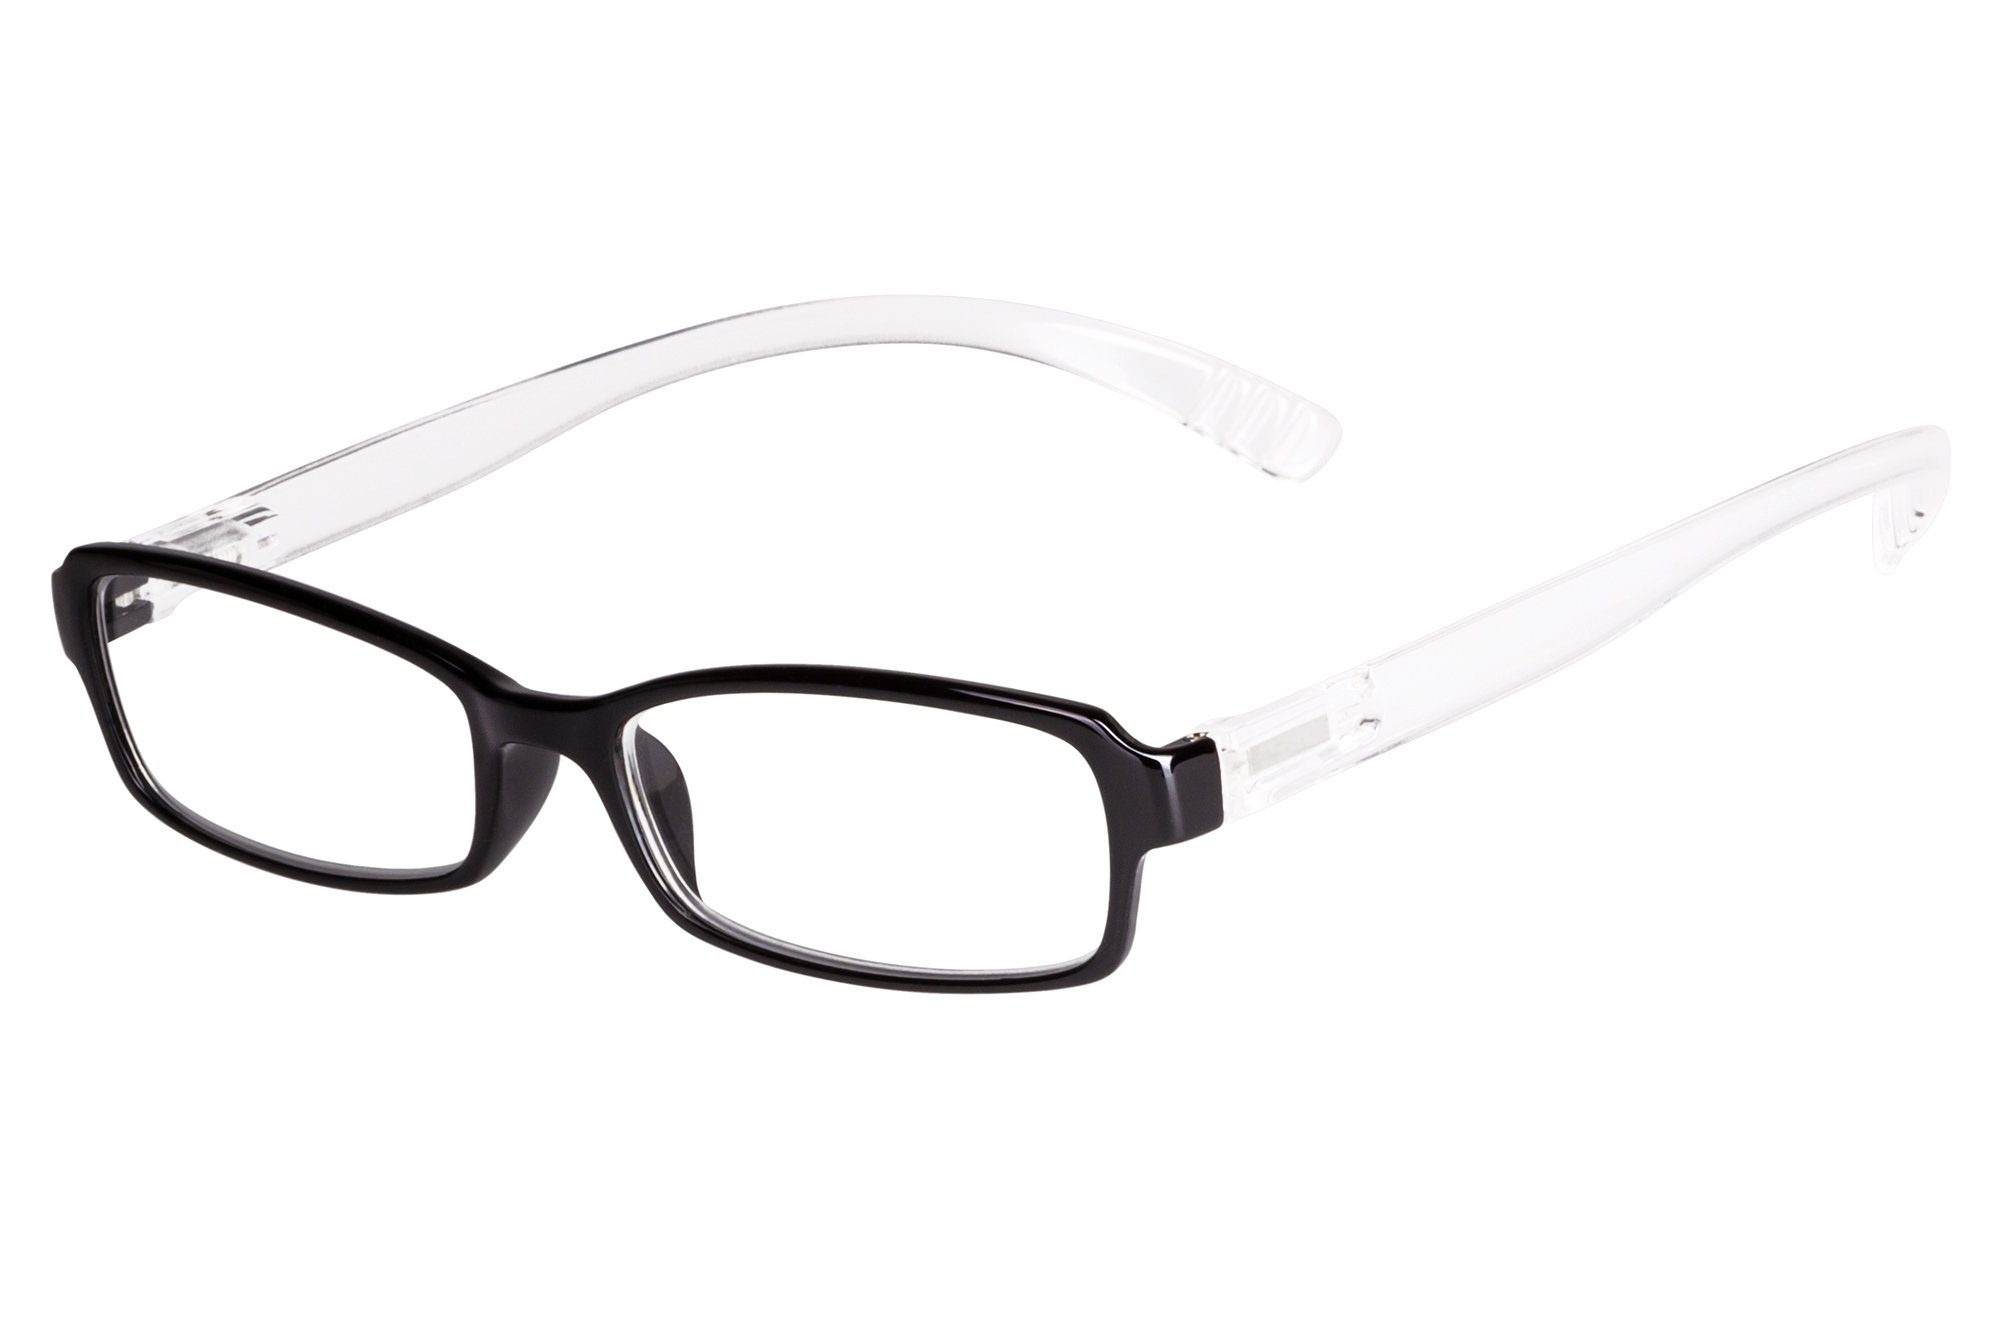 UrbanSky Lesebrille »Hang On«, extra lange Bügel mit starker Biegung zum  Bügelende hin: Damit bleibt die Brille locker um den Nacken hängen, wenn  Sie die Brille absetzen. online kaufen | OTTO